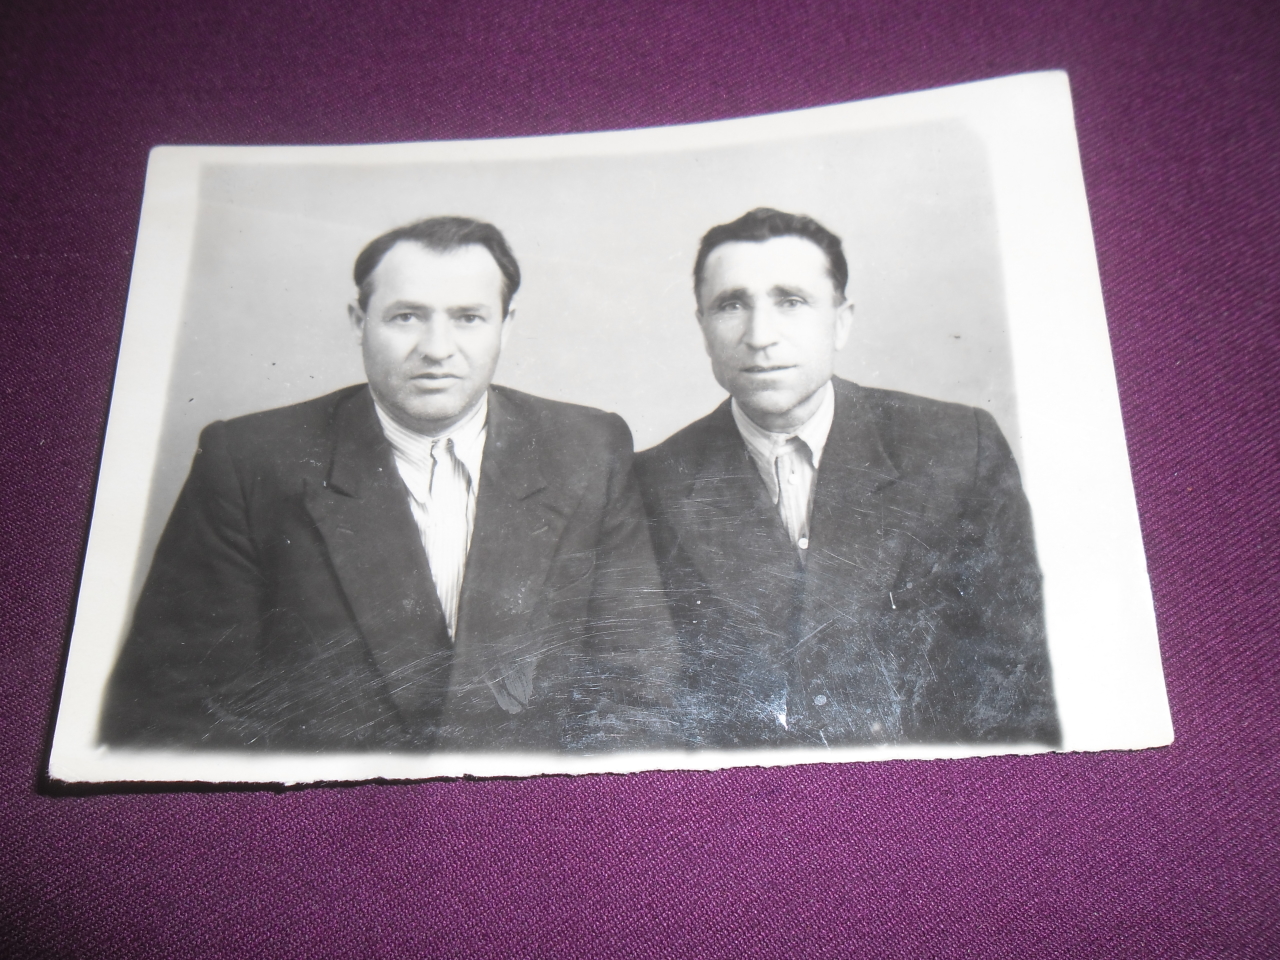 Սաղաթել Մանուկի Մնեյան (Վաստակավոր մանկավարժ, Հայրենական պատերազմի մասնակից) և Լևոն Հայրապետյան